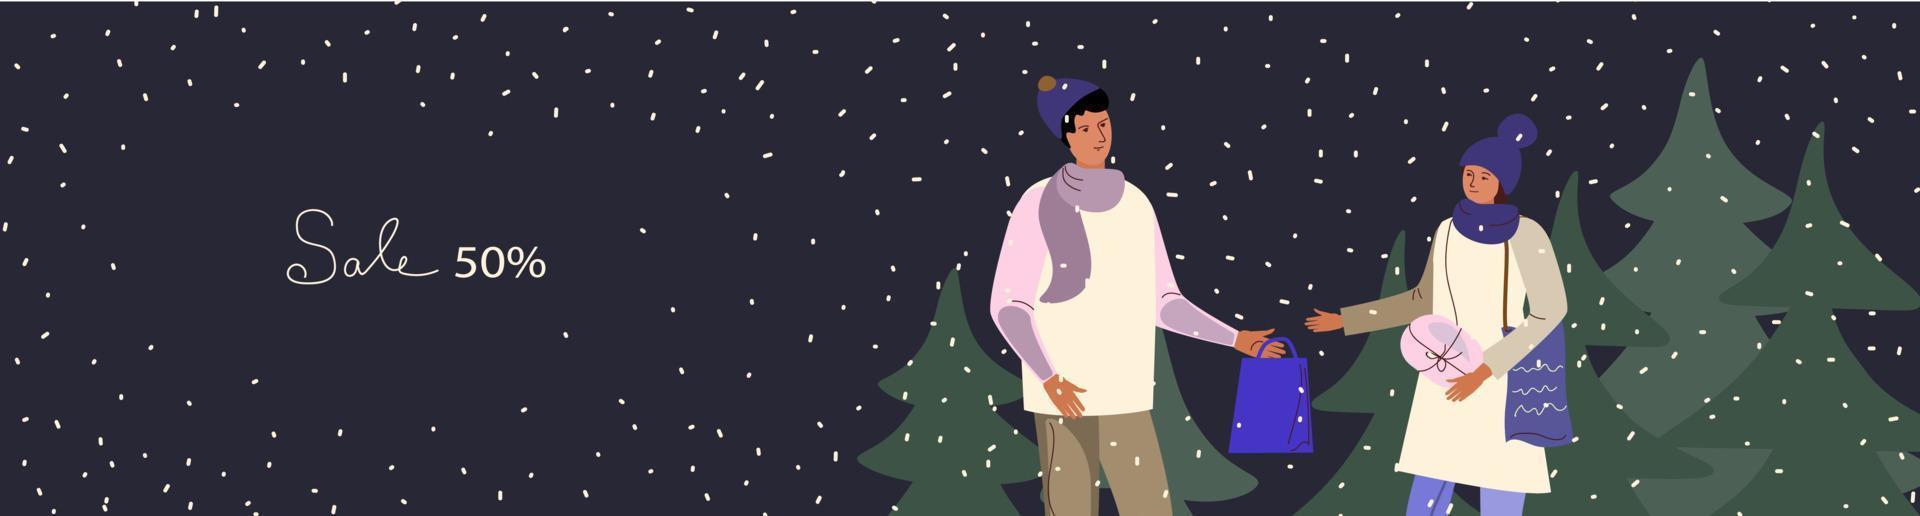 año nuevo, venta de invierno, contenido promocional en redes sociales. ilustración vectorial vector